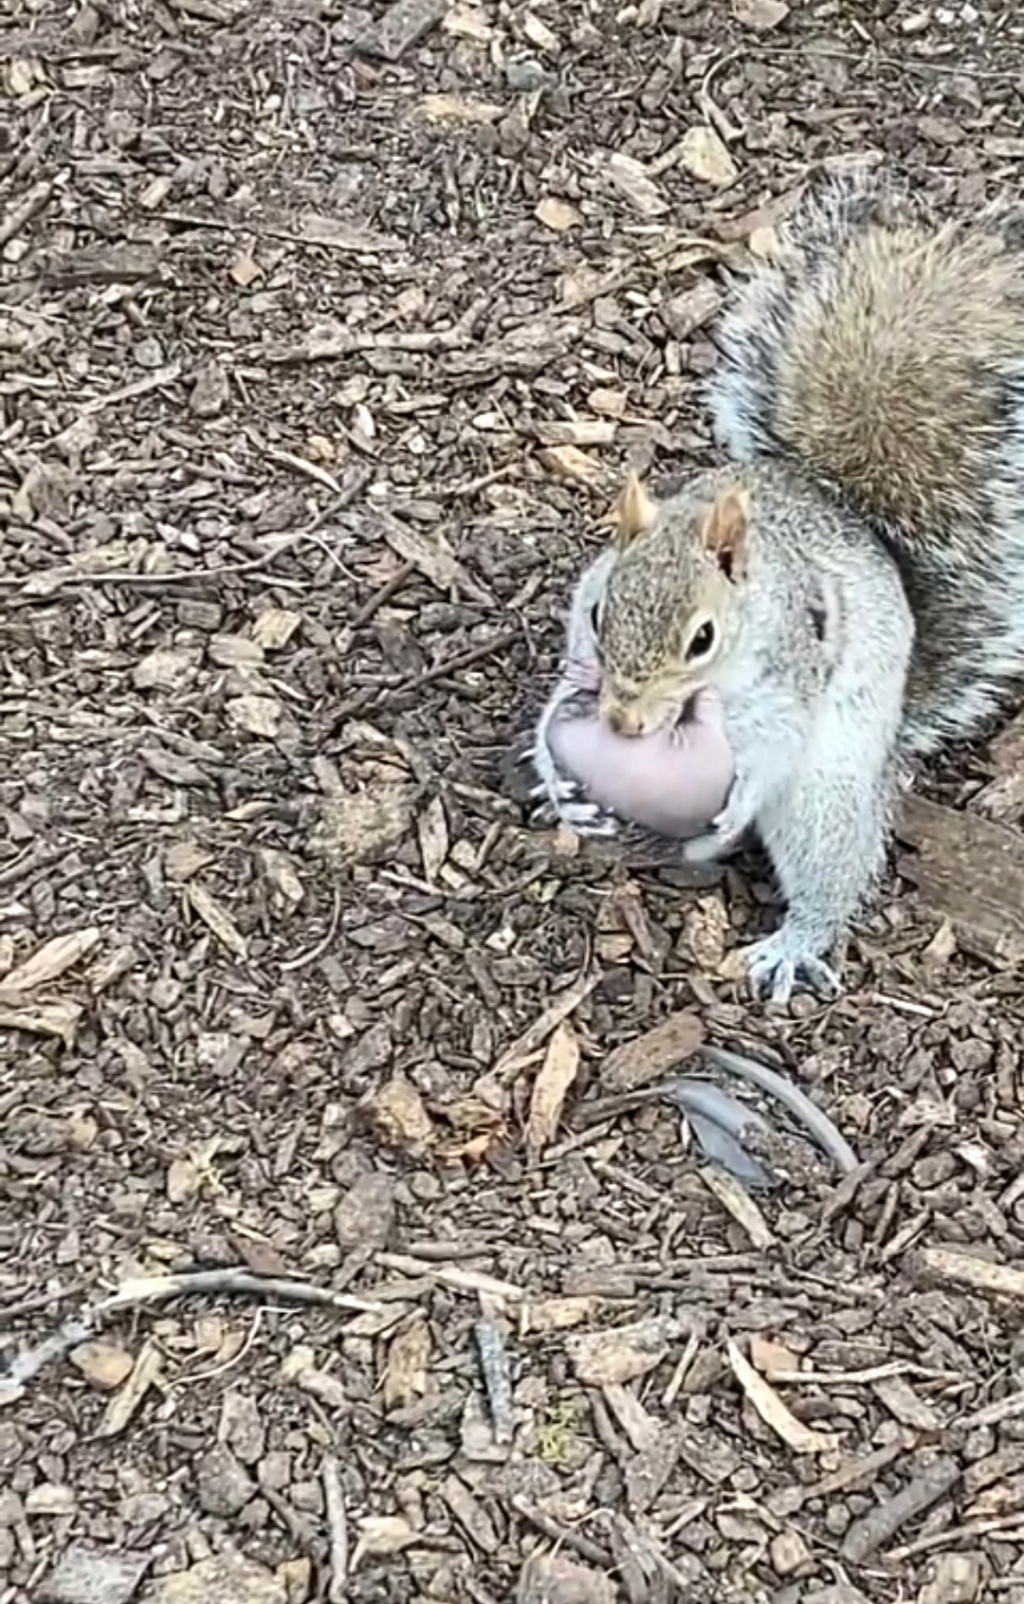 Gli scoiattoli non mangiano solo noccioline - Pagina 6 Scre1158